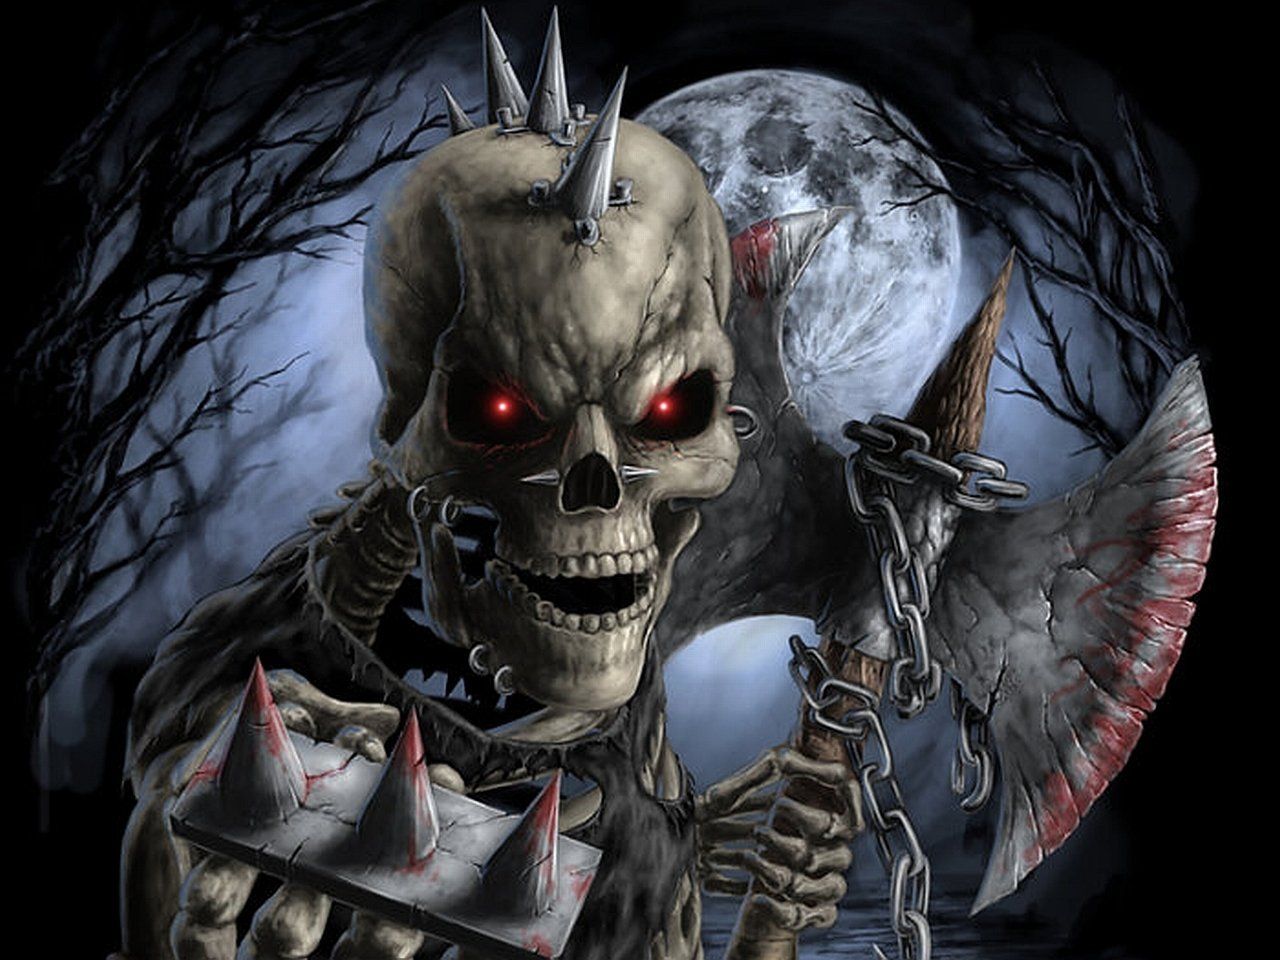 144 Skeleton Hd Wallpapers - Imagenes De Calaveras De Iron Maiden - HD Wallpaper 